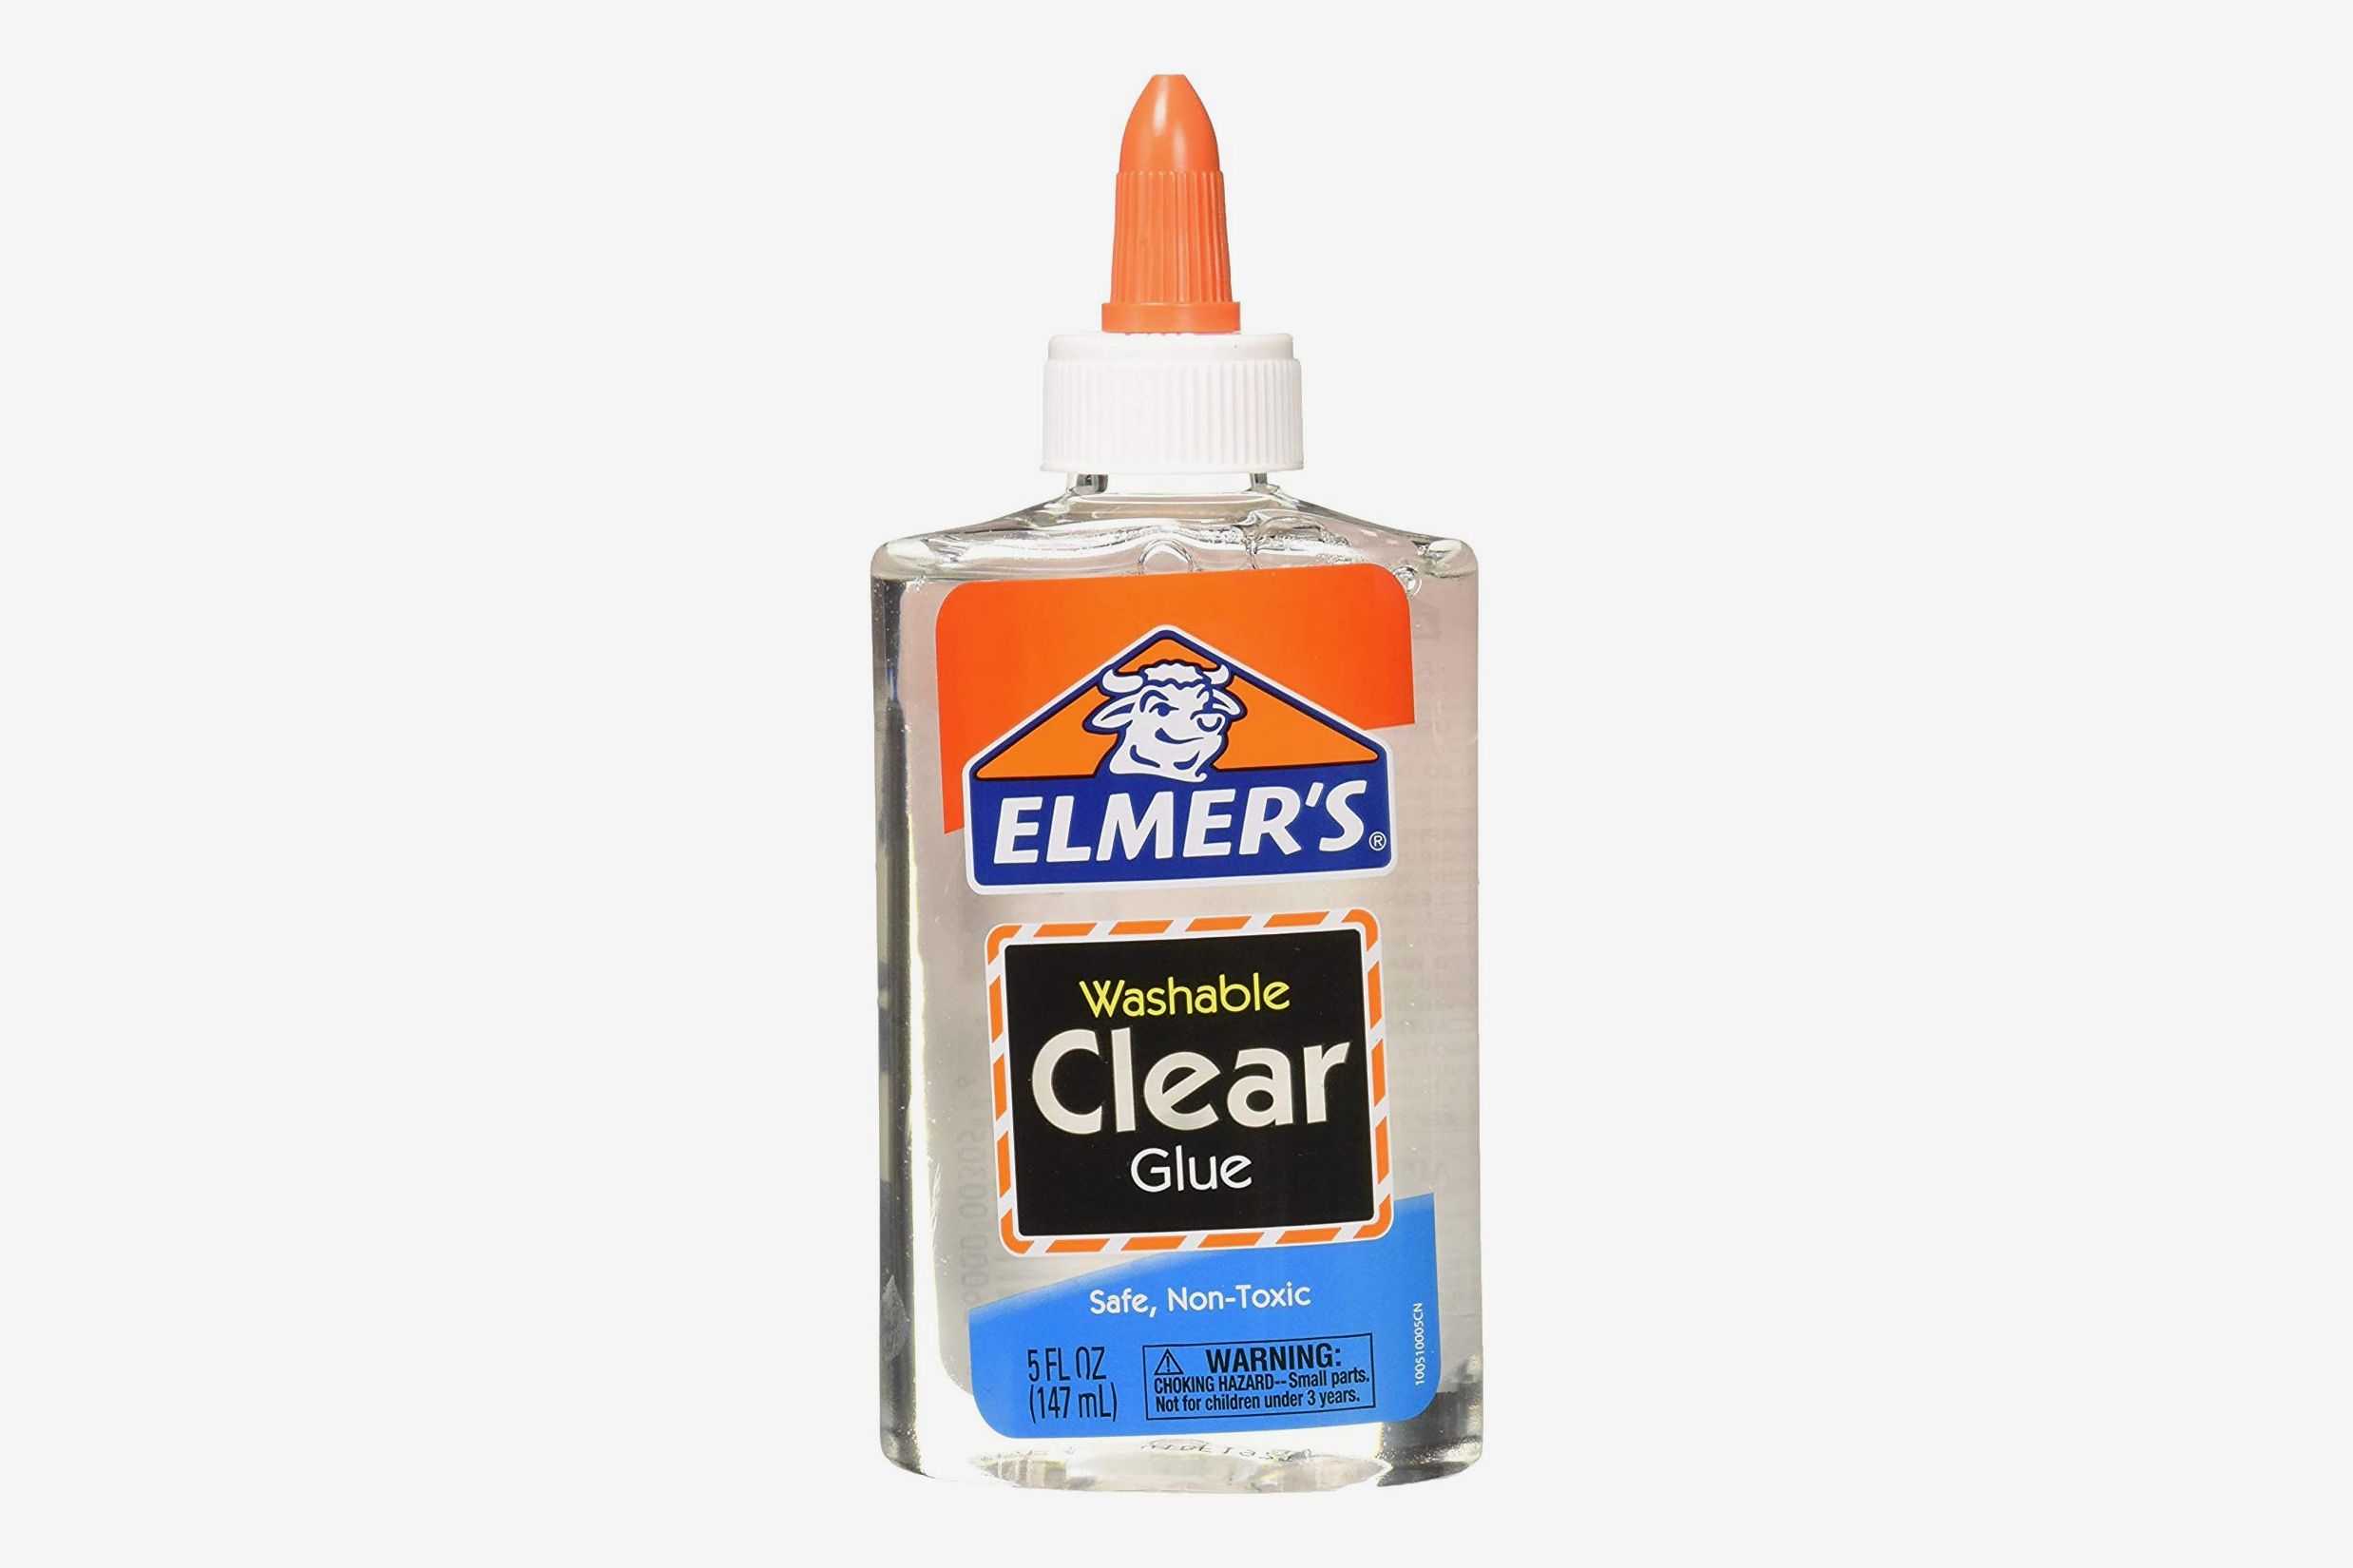 White Glue vs. Clear Glue for Slime! *SLIME WARS* 